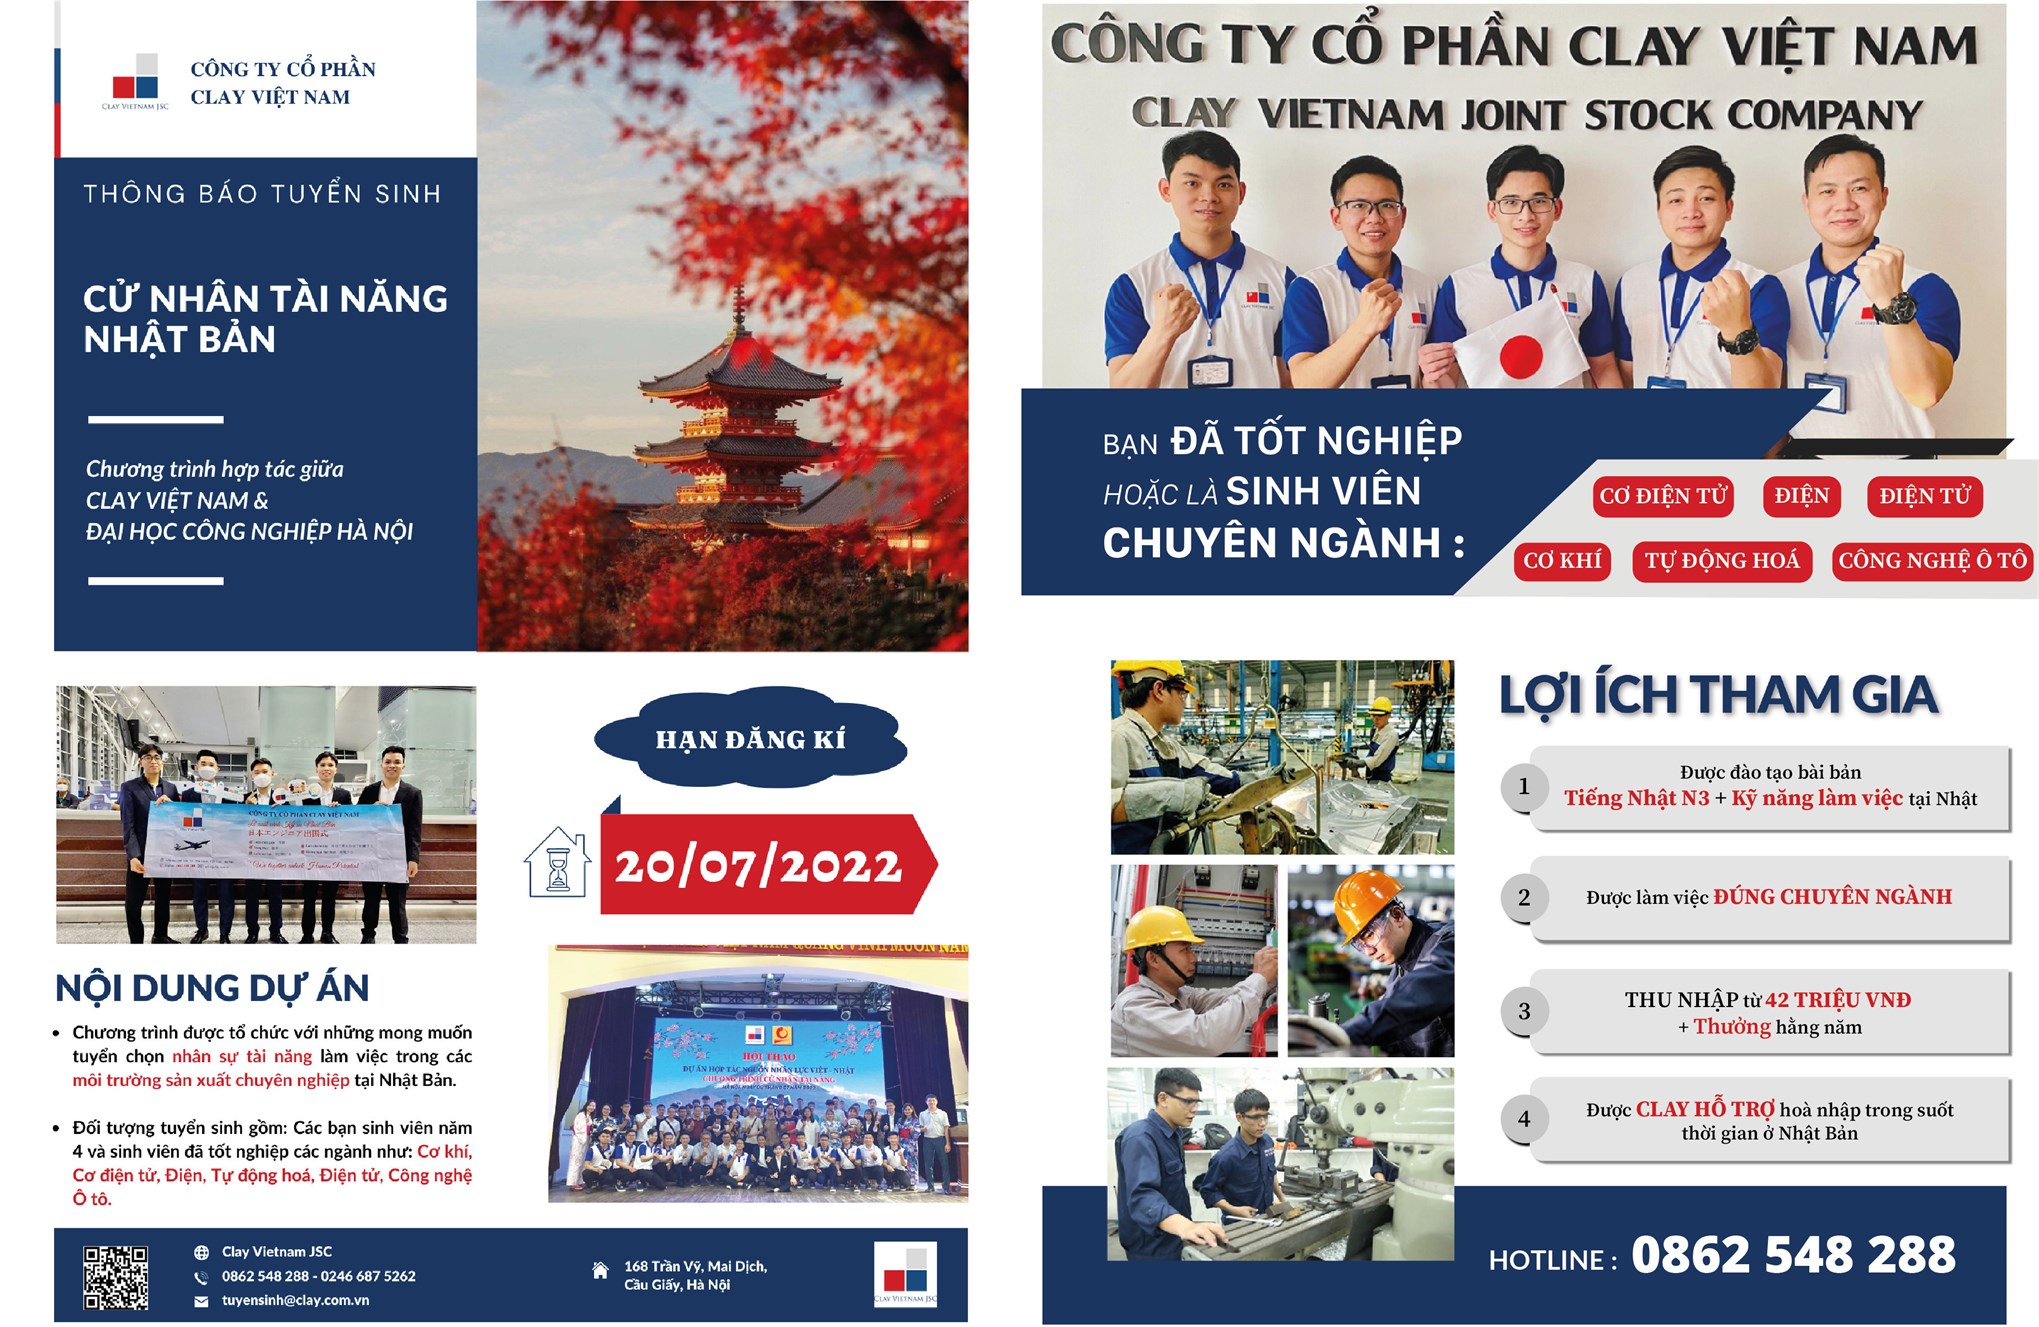 Chương trình tuyển sinh đào tạo lớp Cử nhân làm việc tại Nhật Bản của Công ty Clay Việt Nam